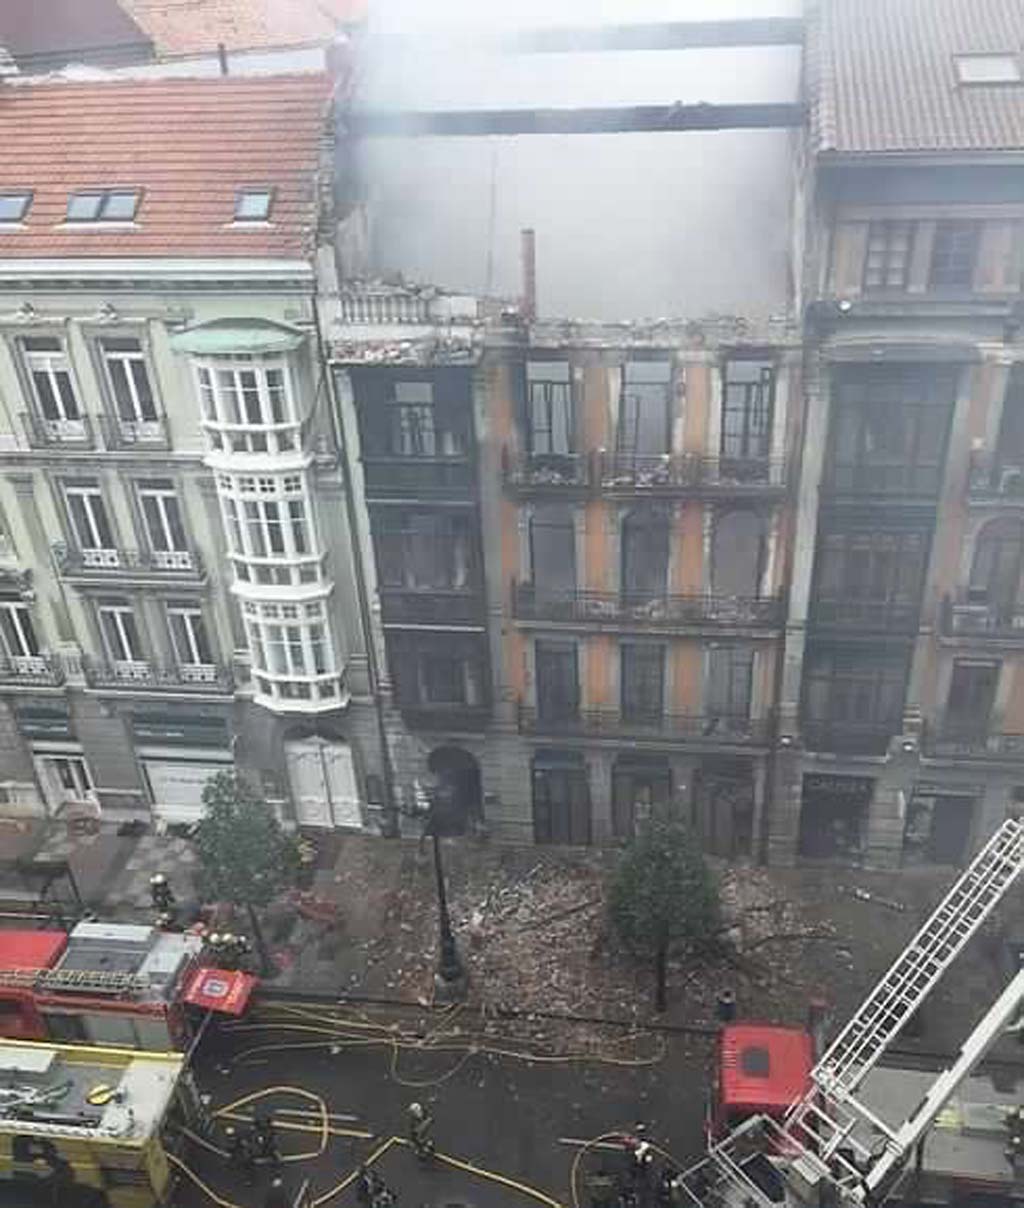 La #Audiencia no aprecia delitos y archiva definitivamente el #incendio de la calle #Uría de #Oviedo